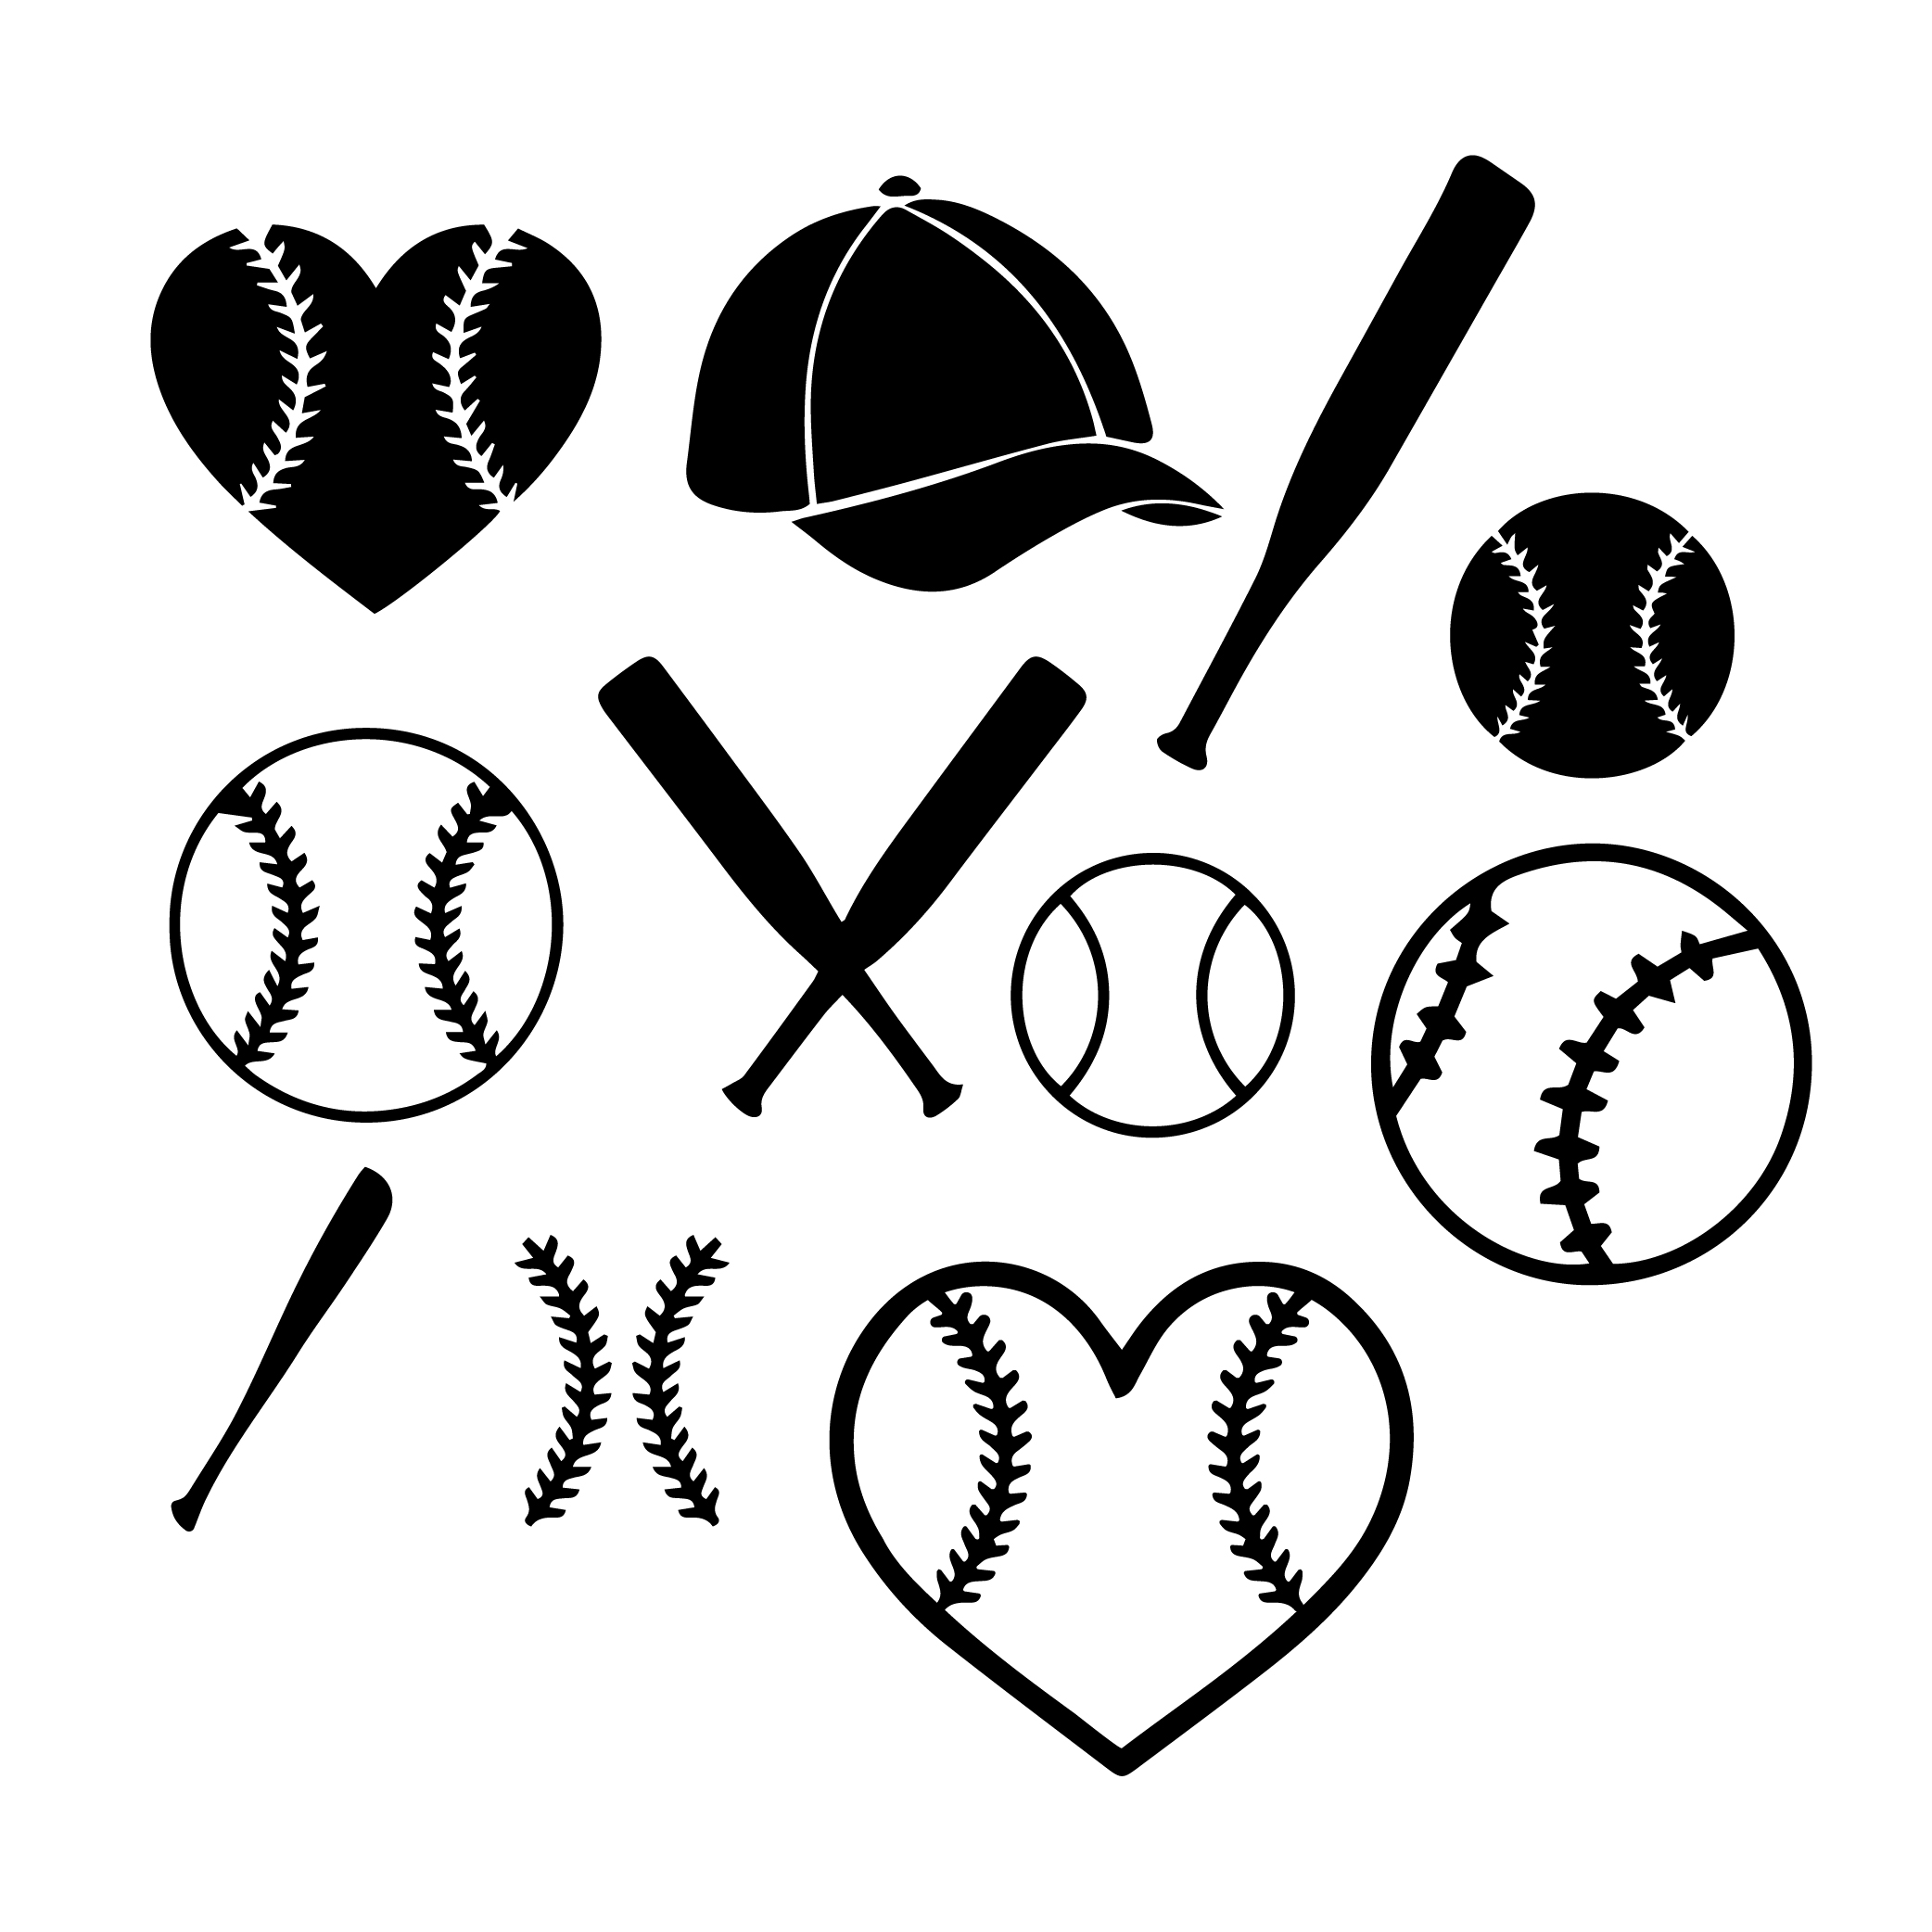 Baseball Design Bundle (SVG - PNG - JPG - EPS ) Included preview image.